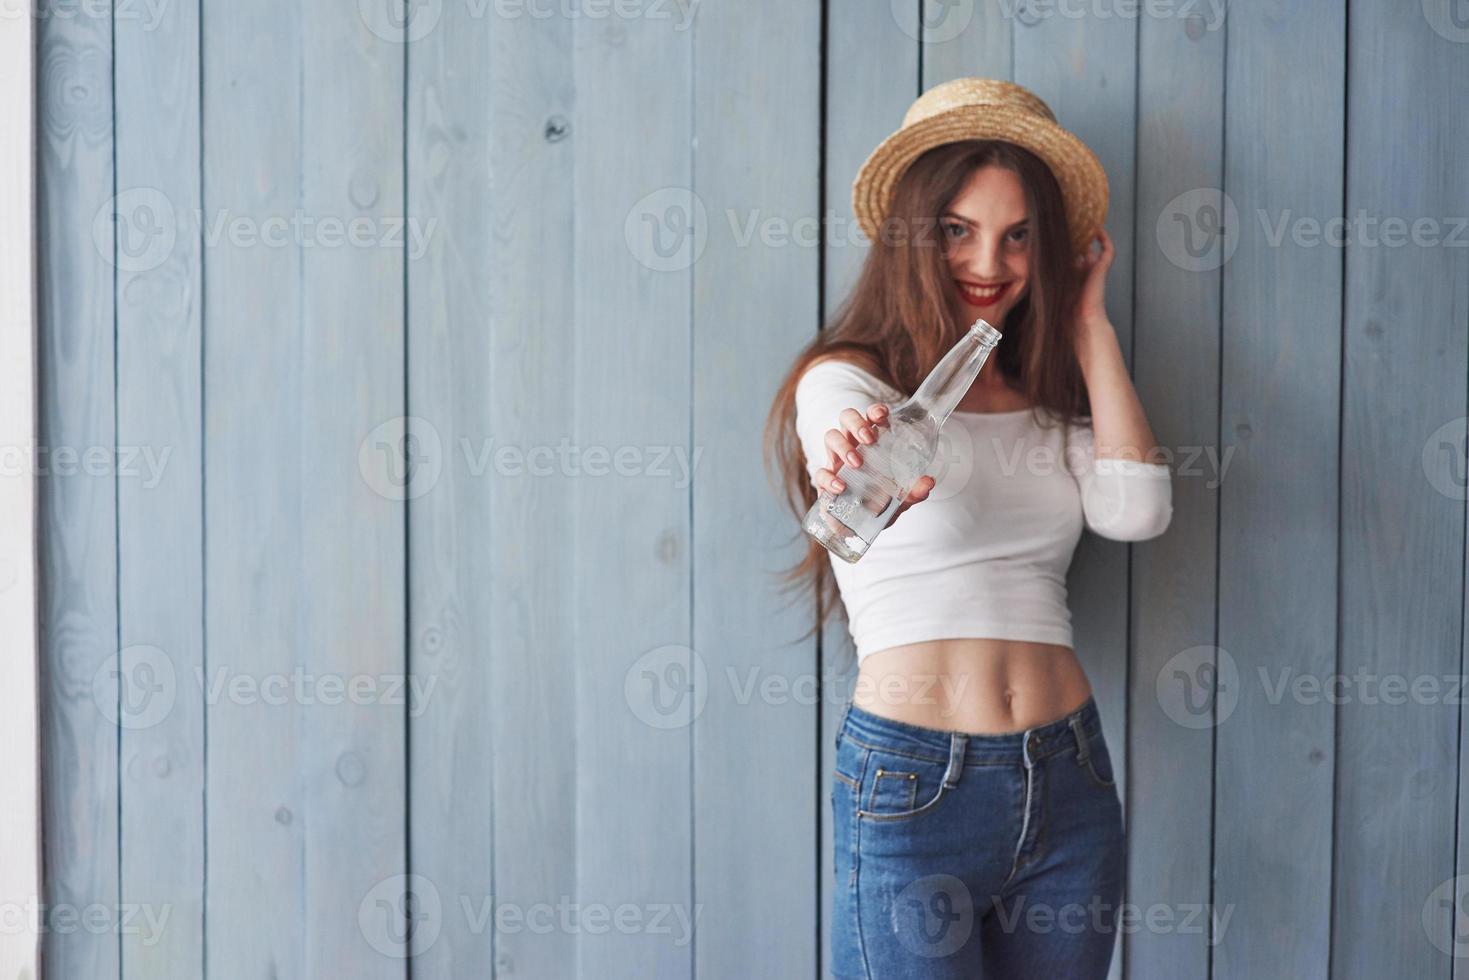 ne vois-tu pas que c'est vide. faire quelque chose à ce sujet. portrait de belle jeune fille avec un chapeau sur la tête et une bouteille à la main debout contre un mur en bois photo